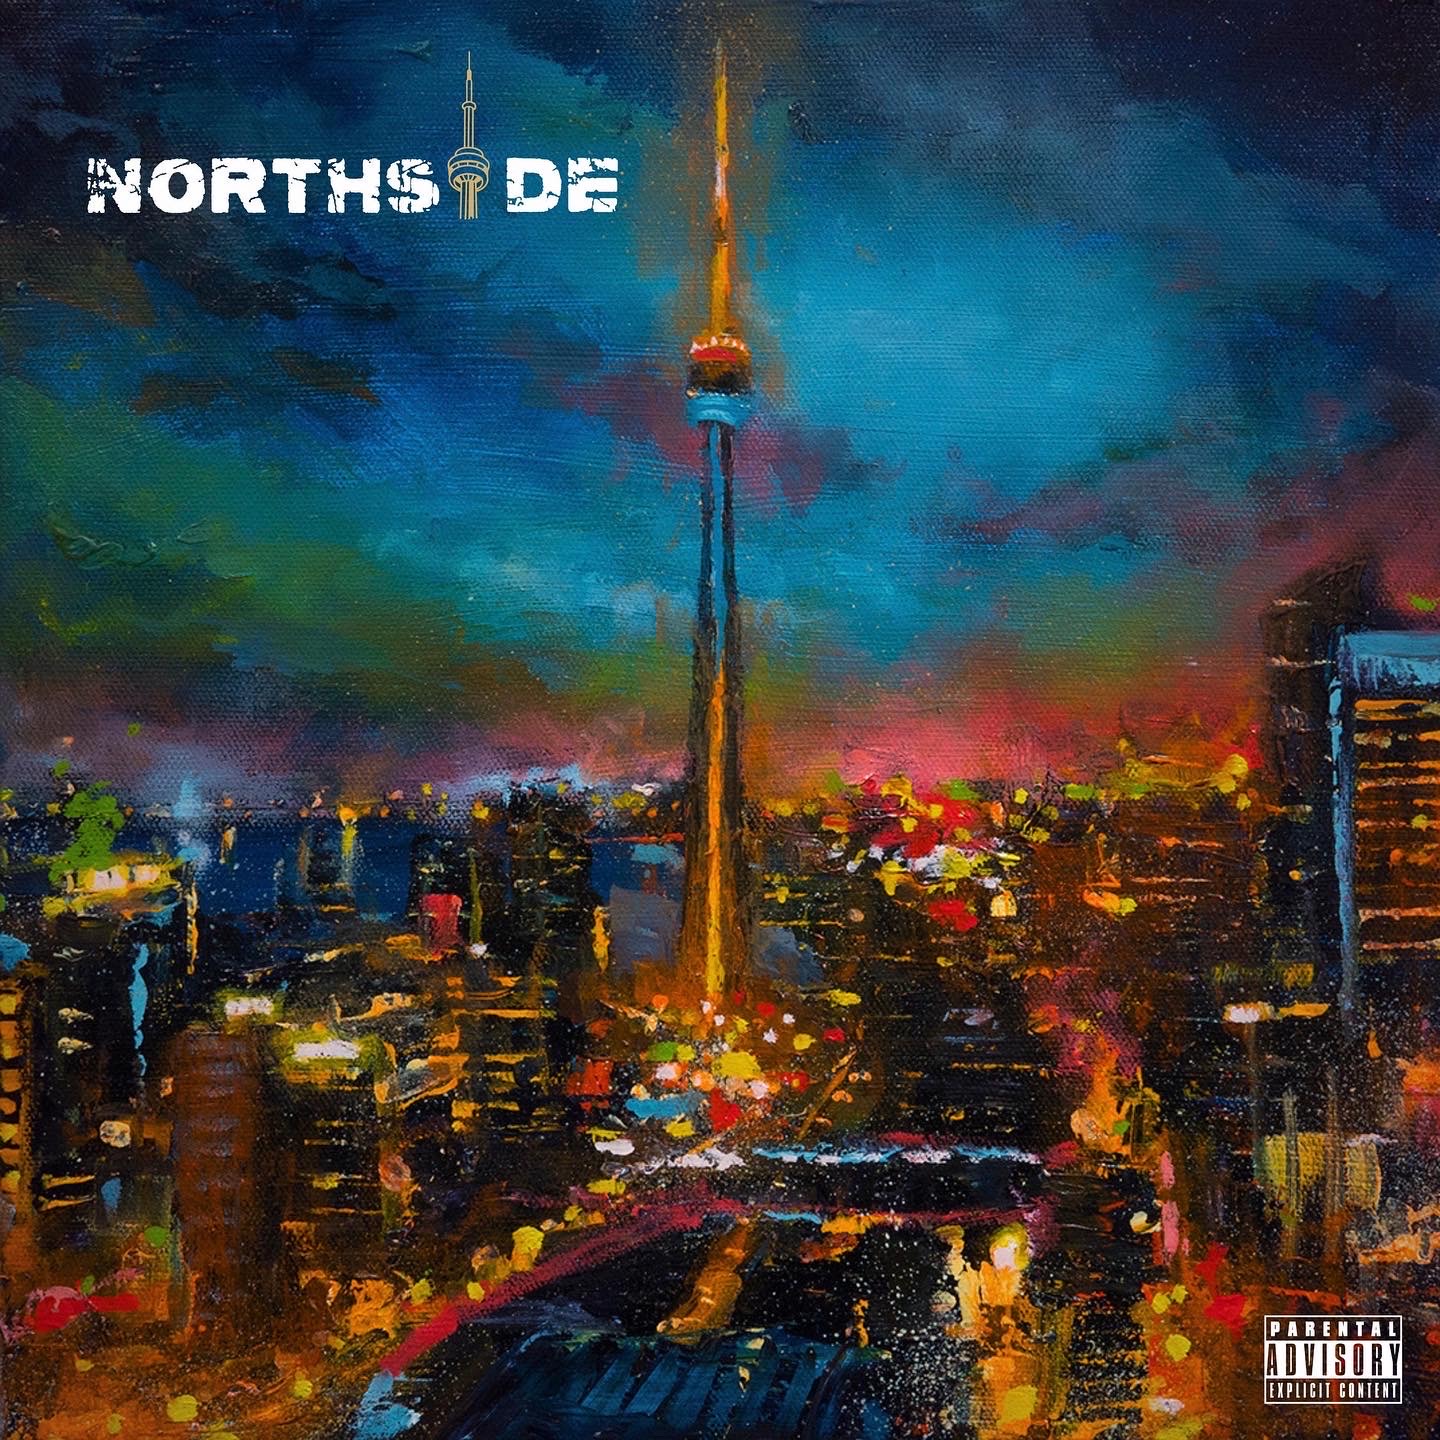 Canadian Hip-Hop Artist JRoberts Drops New Album “NorthSide”